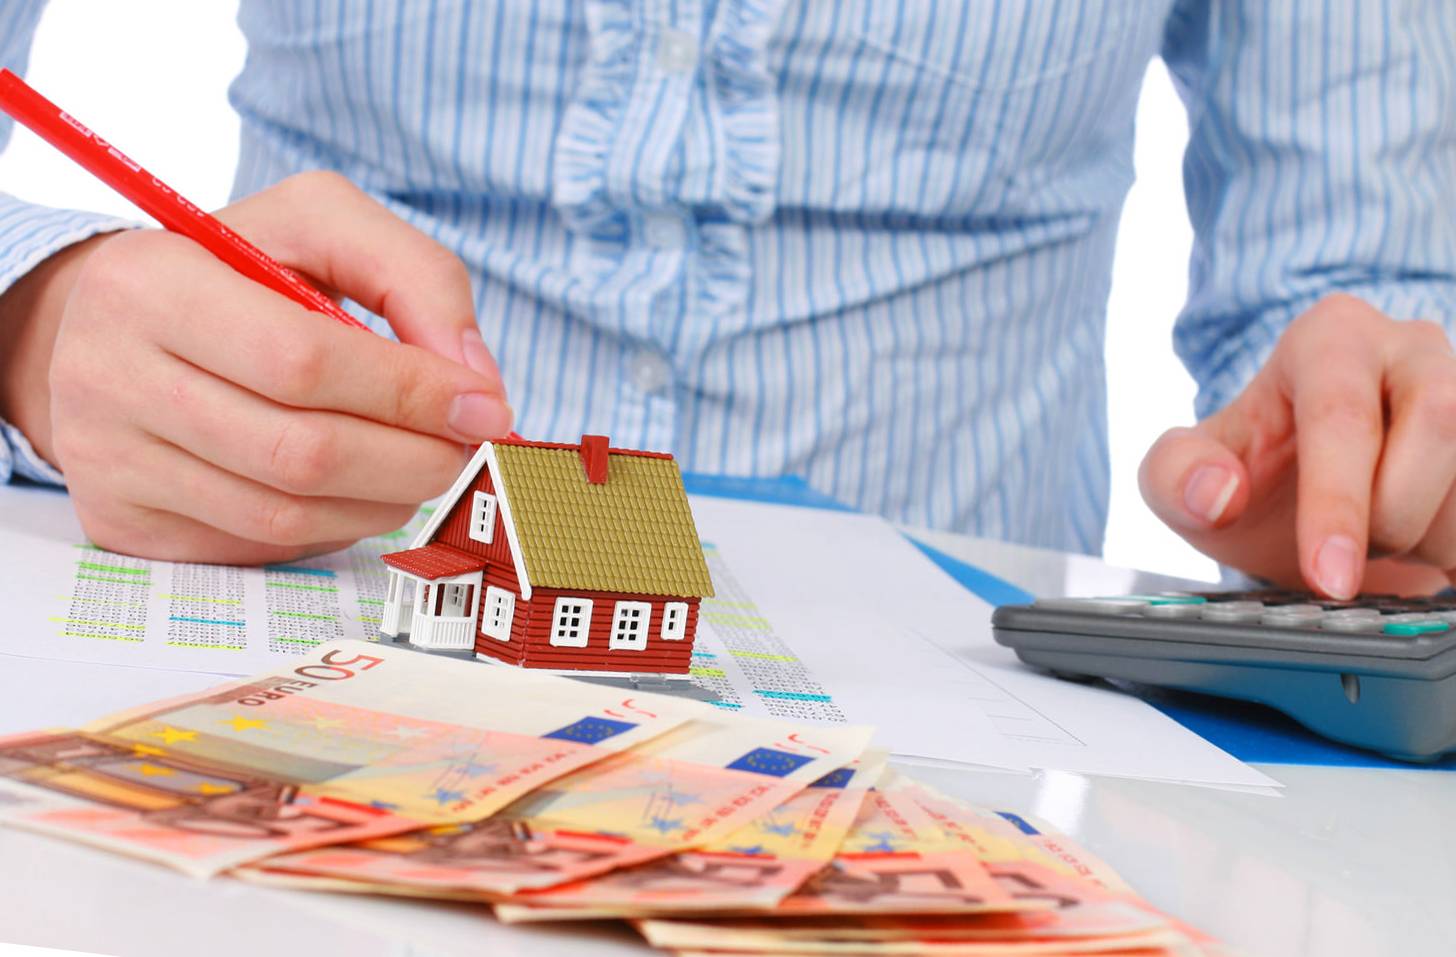 Взять кредит под залог недвижимости: квартиры, дома, участка — топ 7 банков